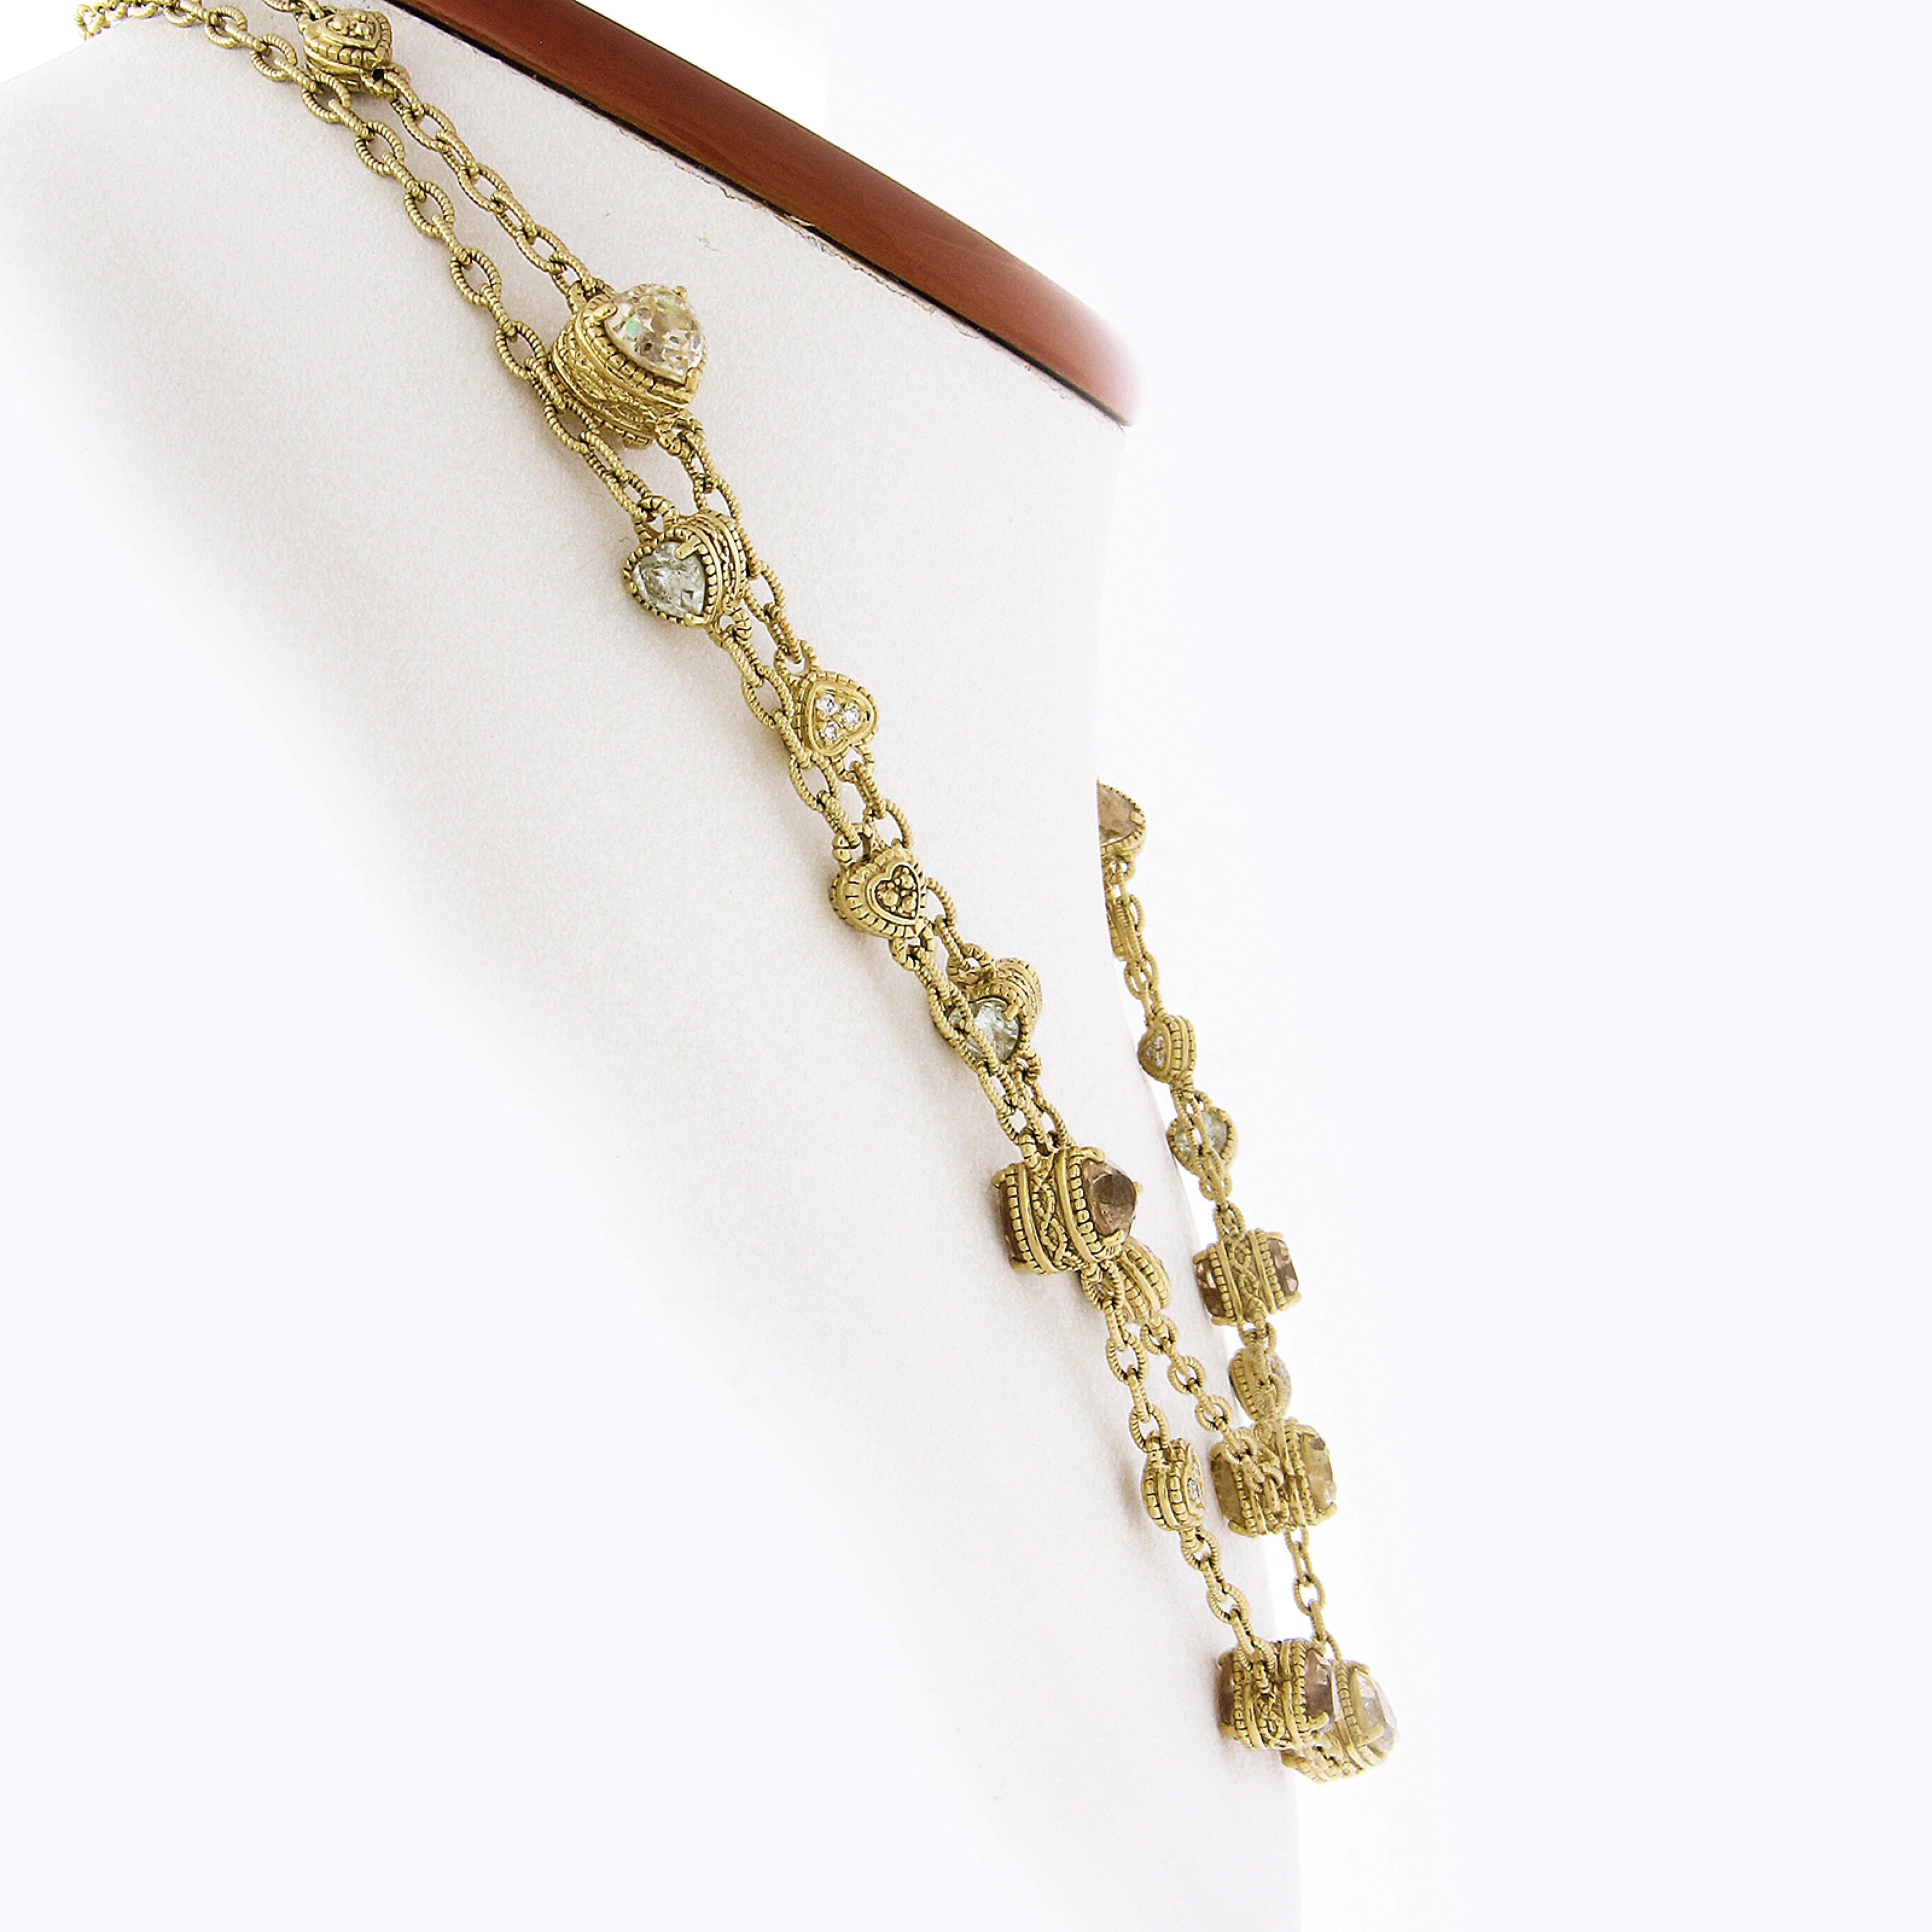 Hier haben wir eine prächtige Herzen durch die Yard-Kette Halskette, die von Judith Ripka entworfen und aus massivem 18k Gelbgold gefertigt ist. Dieses lange und sehr gut gemachte Stück ist aus strukturiertem Kabelglied mit wunderschön